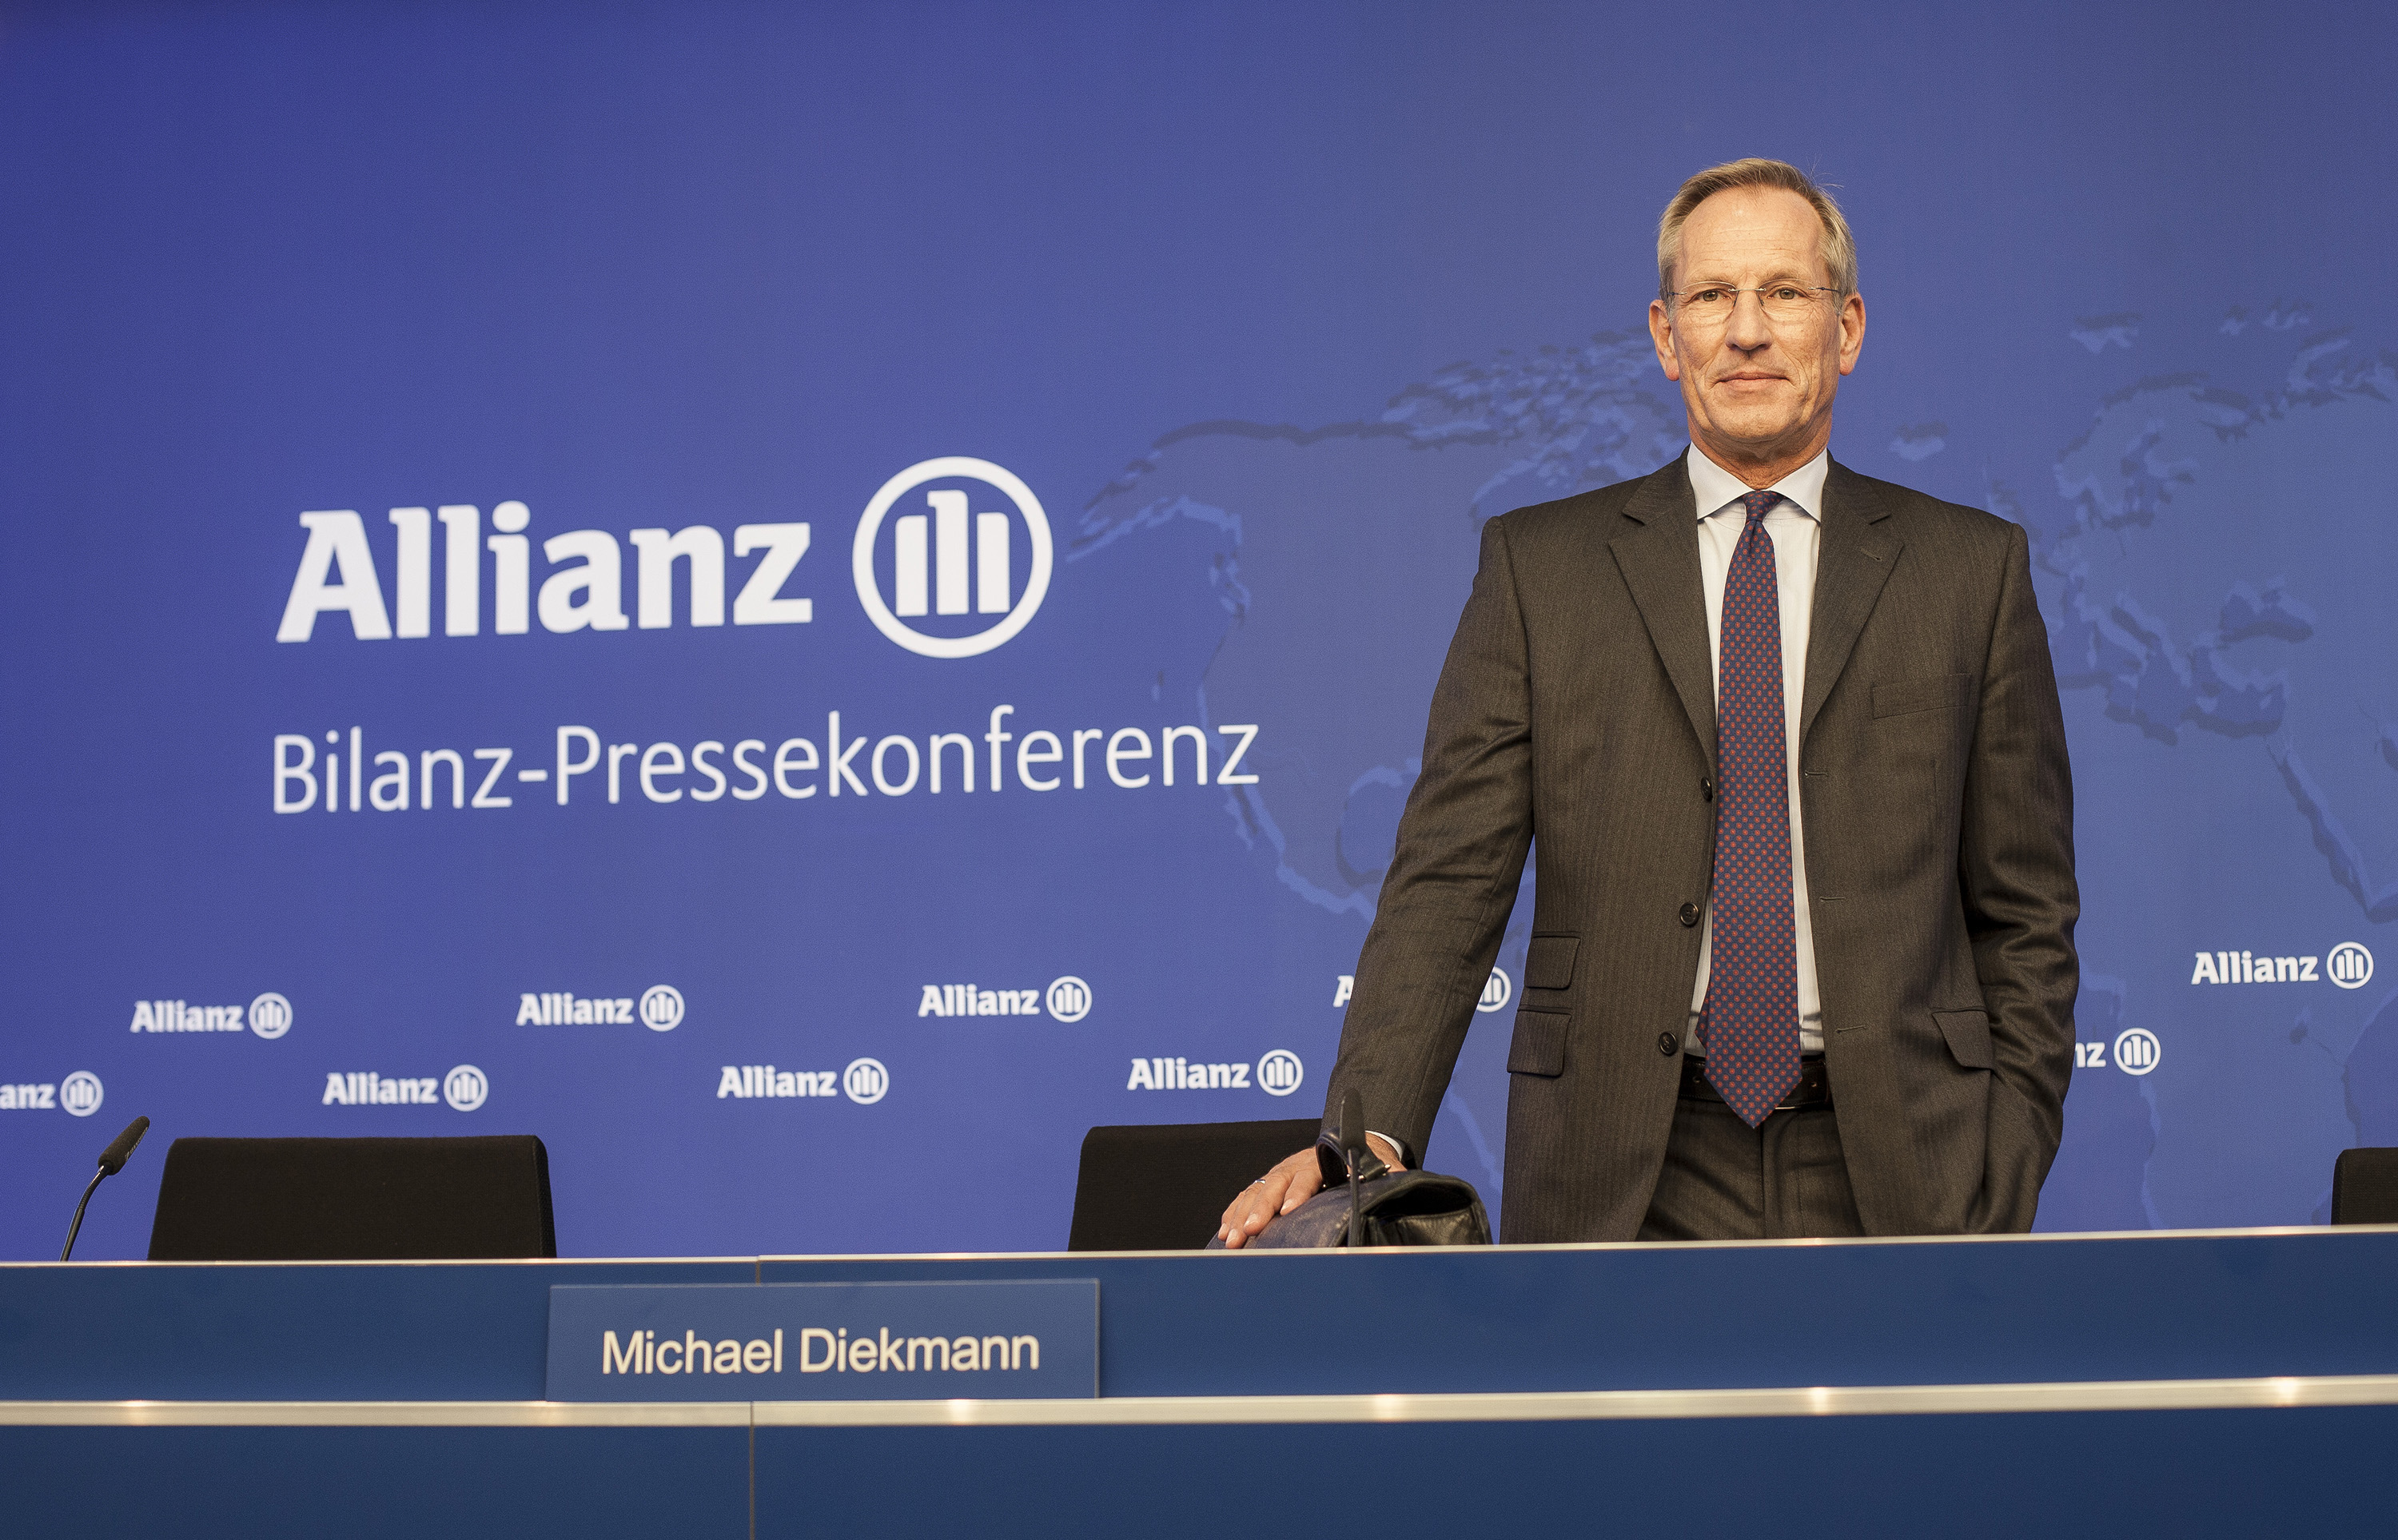 Allianz CEO Michael Diekmann